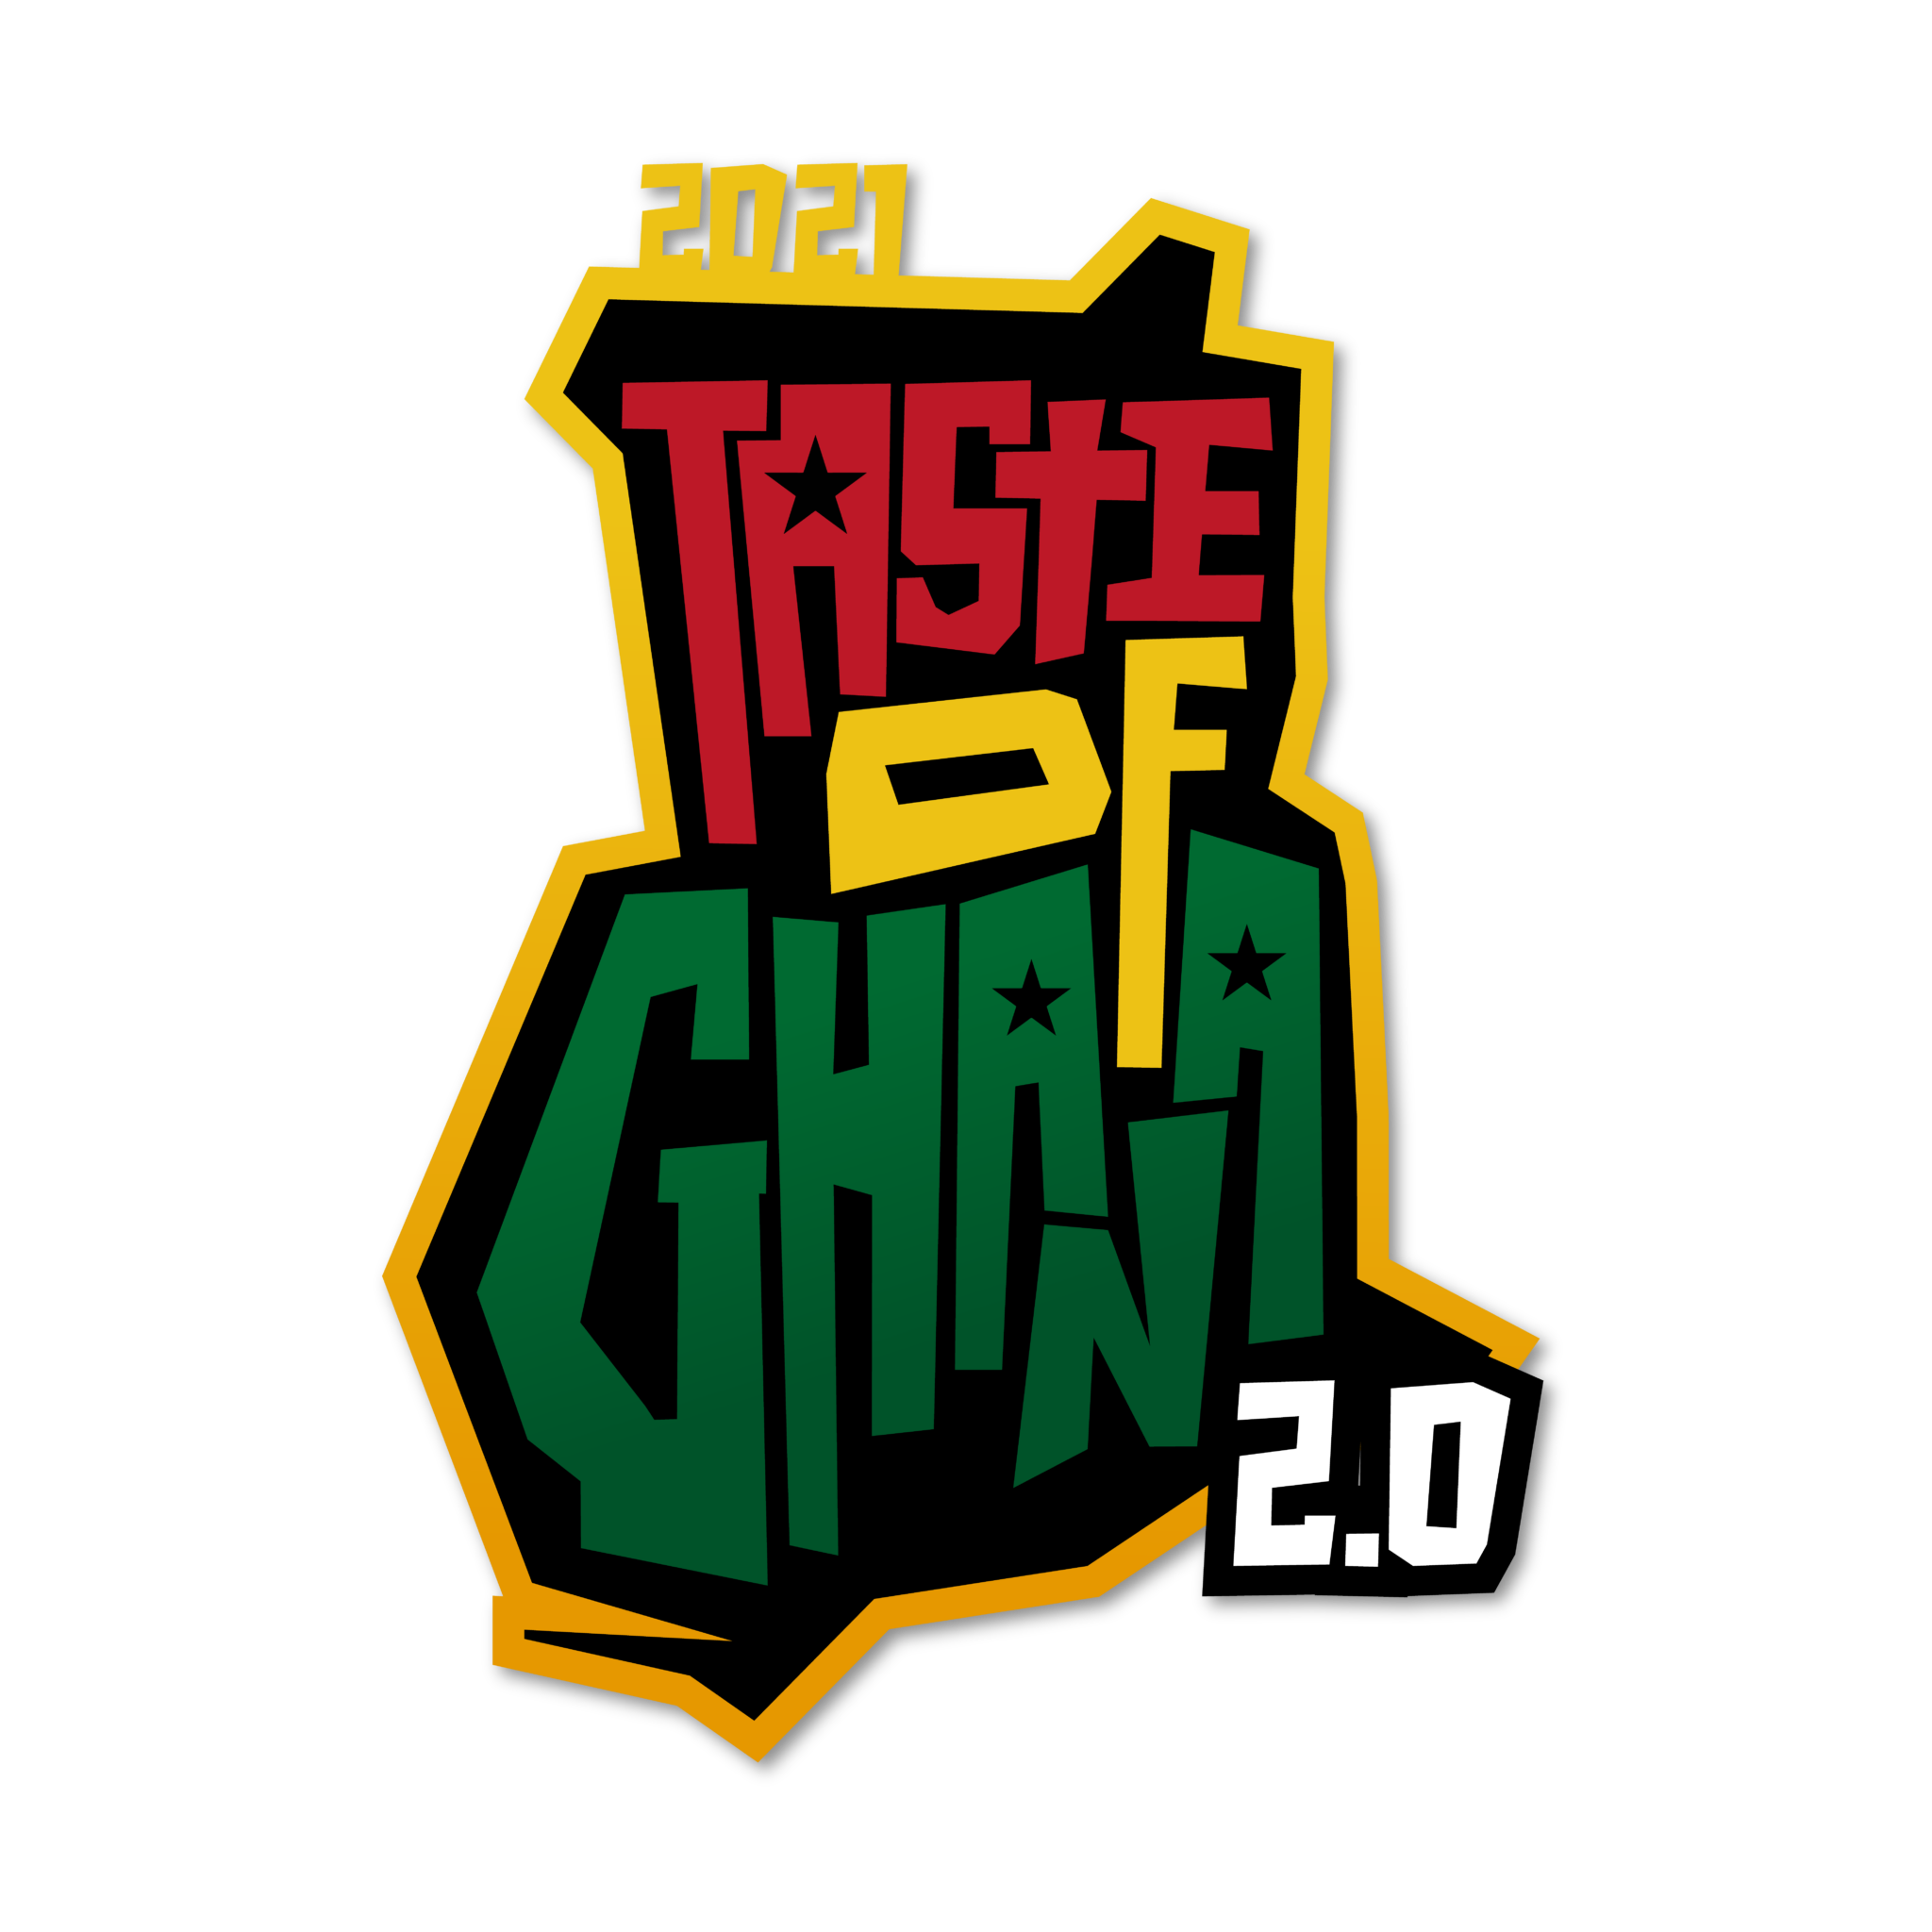 Taste of Ghana logo